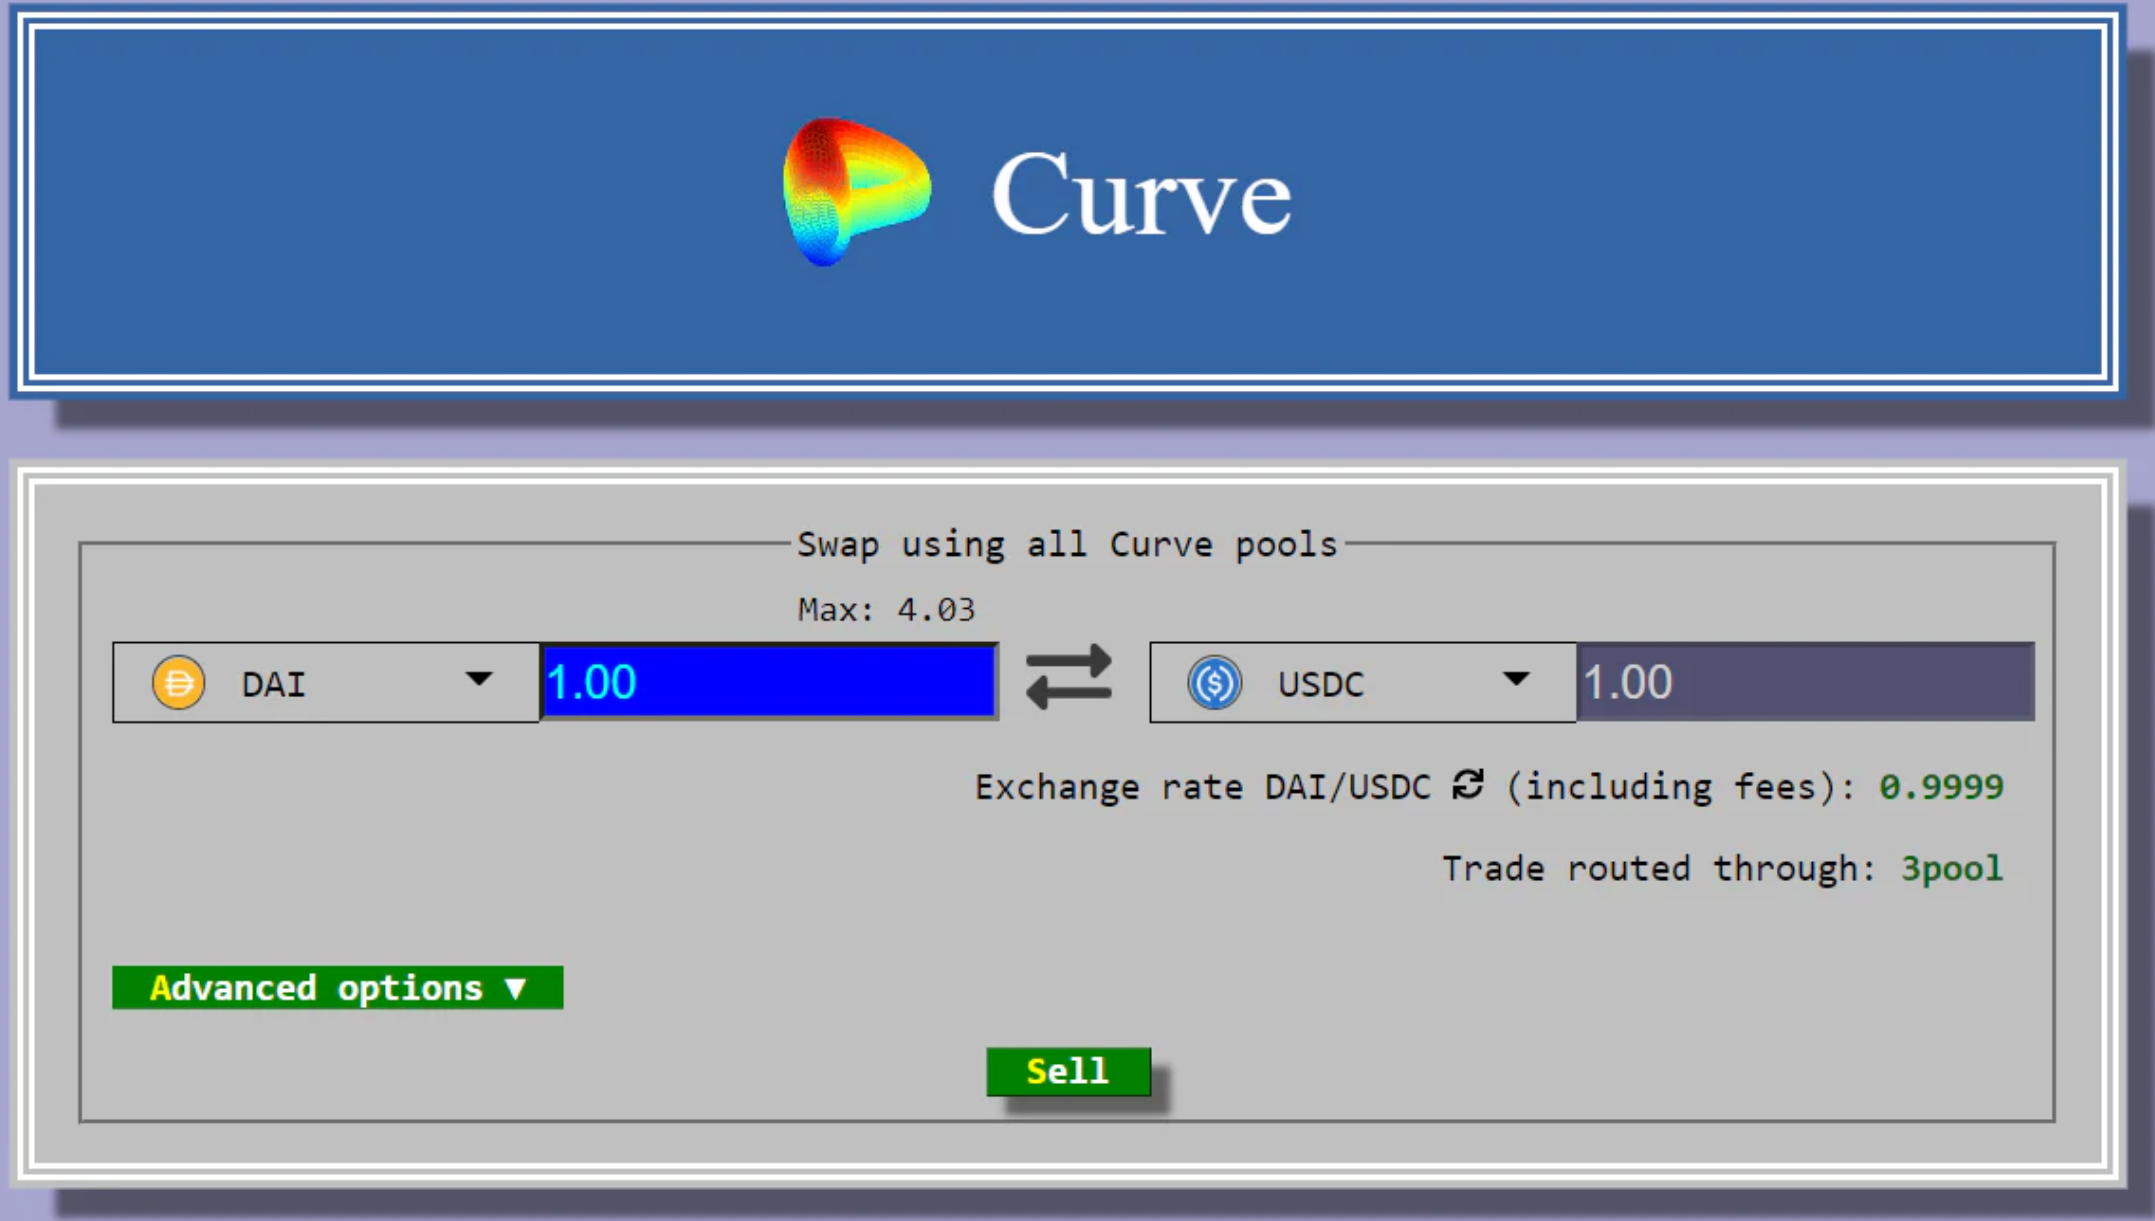 Curve's Geek UI design